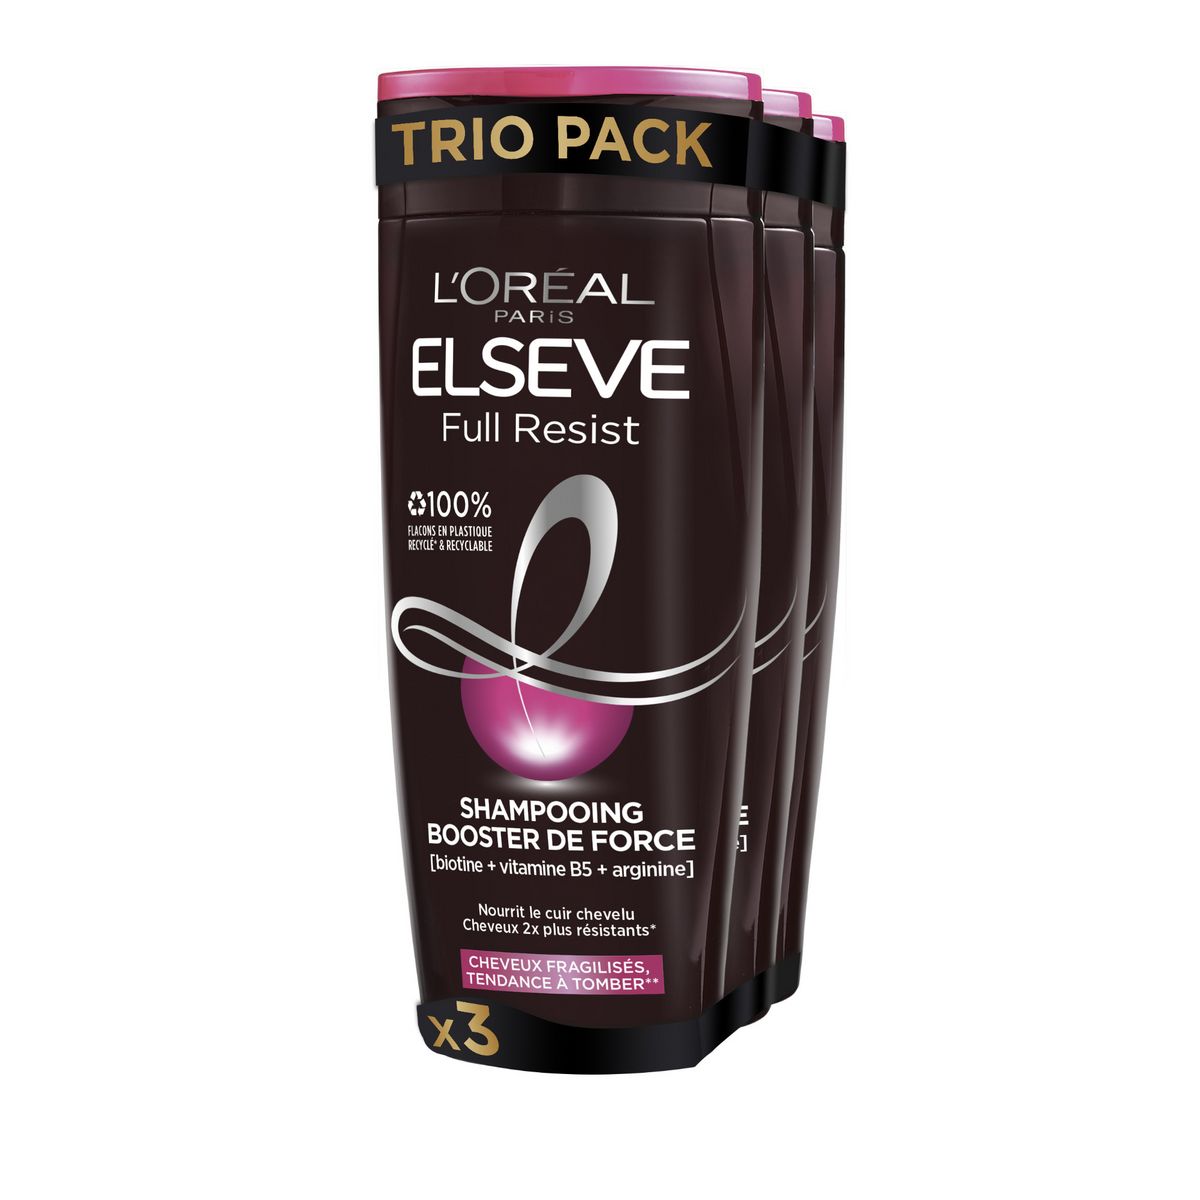 ELSEVE Full Resist shampooing booster de force pour cheveux fragilisés 3x250ml